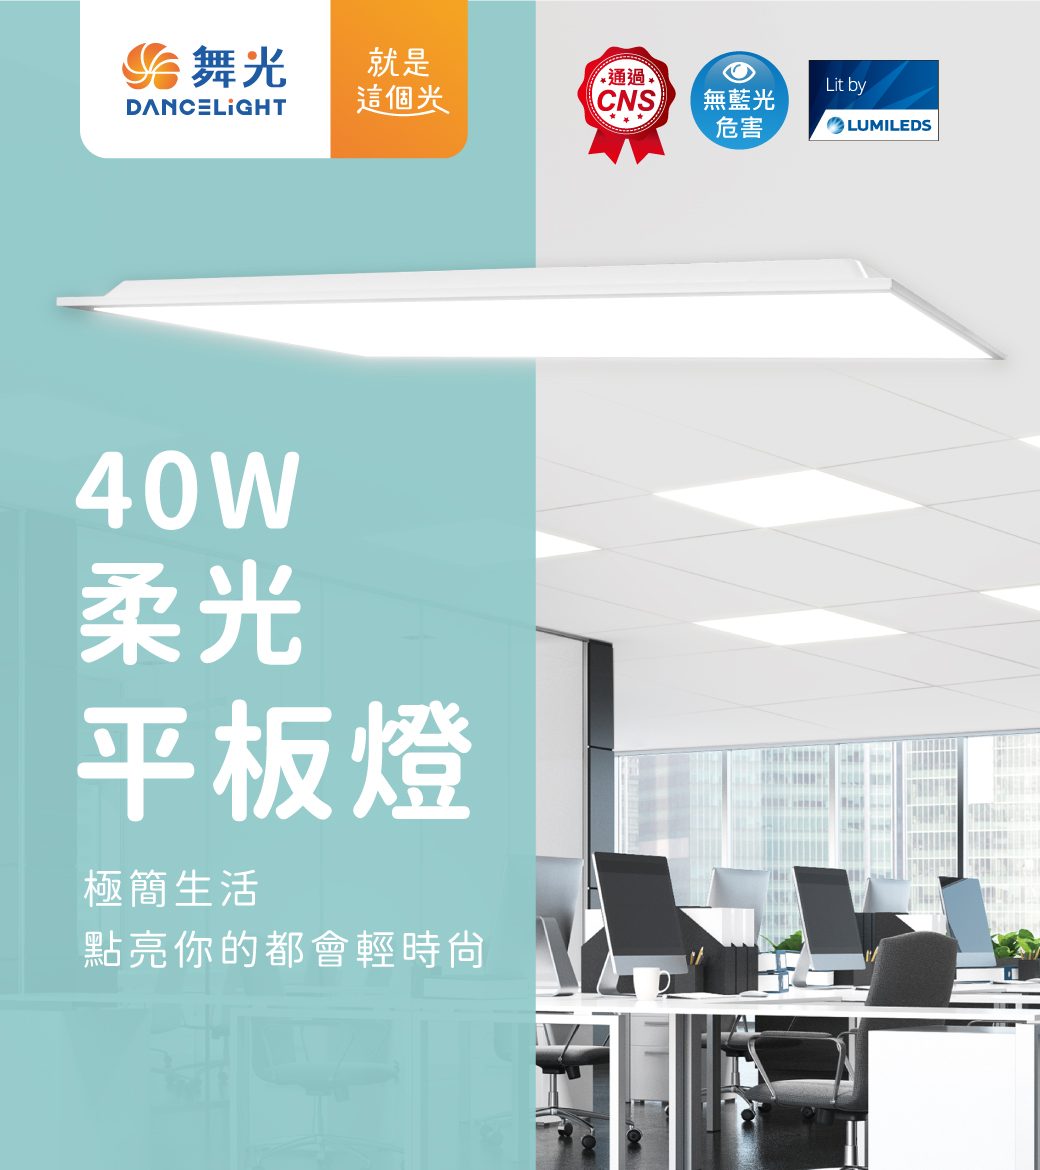 202308-40W柔光平板燈R5_官網圖文-v01_01